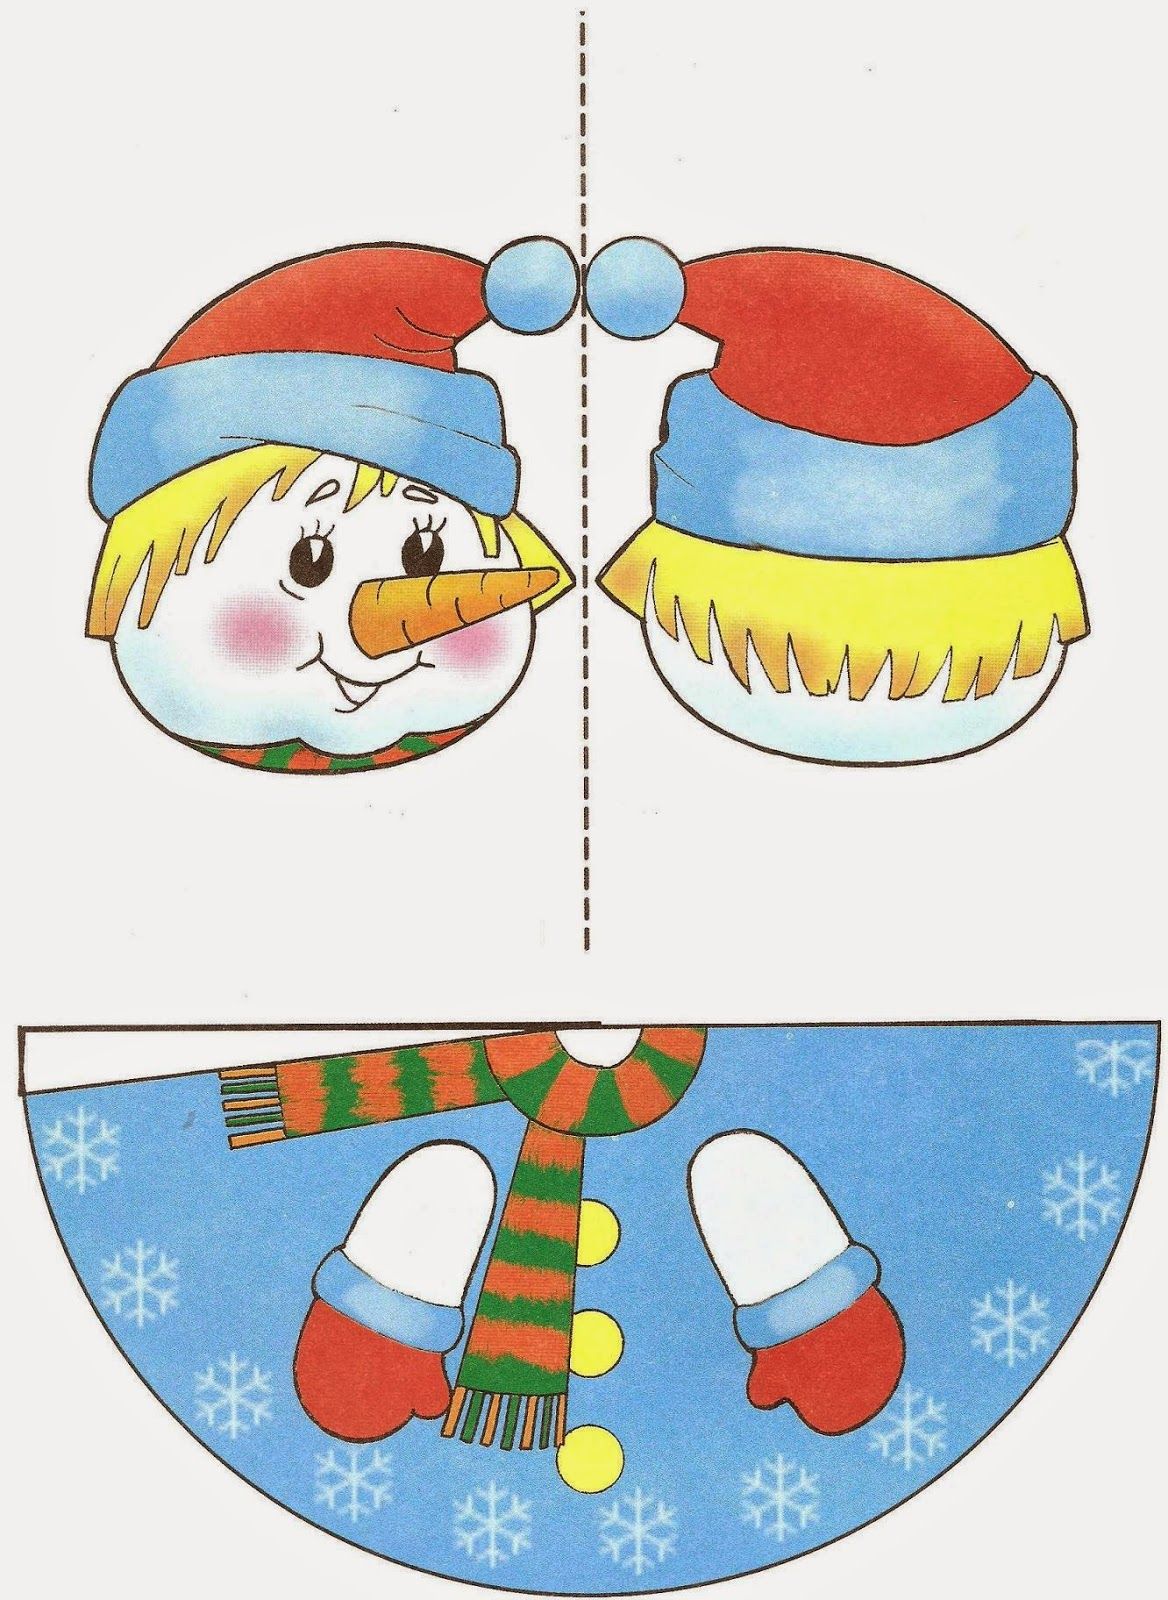 Дед мороз из бумаги своими руками: шаблоны и схемы новогодней поделки деда мороза для детей